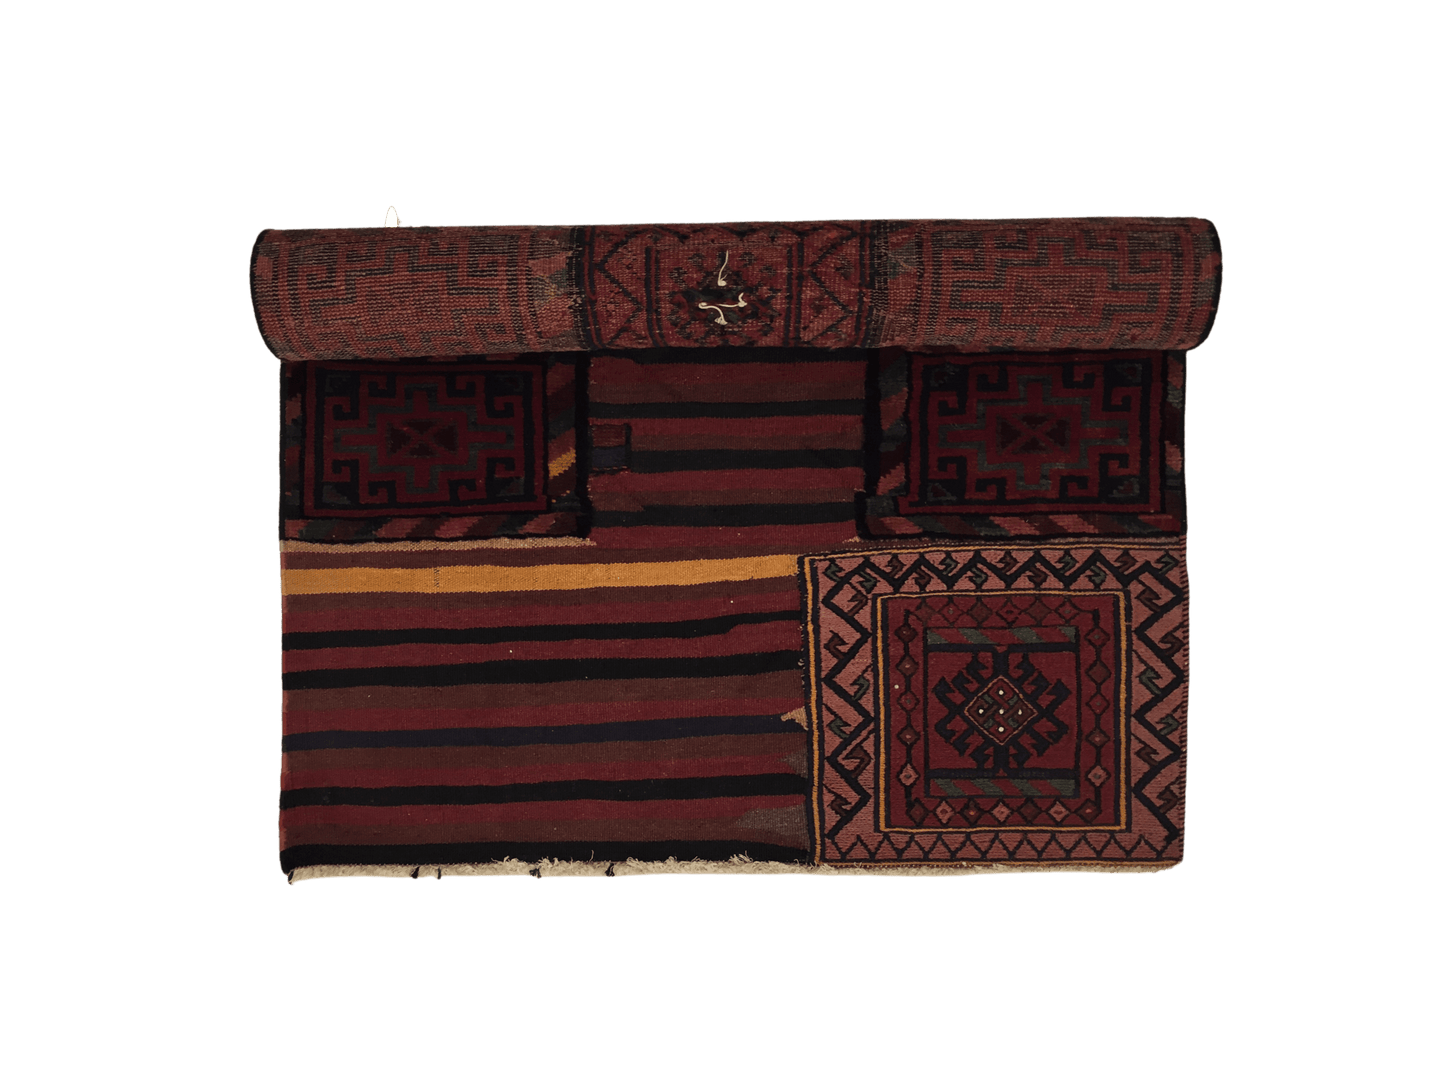 Carpet Bakhtiari 104 X 236 cm - Alfombras de Estambul -  Turkish Carpets - Alfombras de Estambul